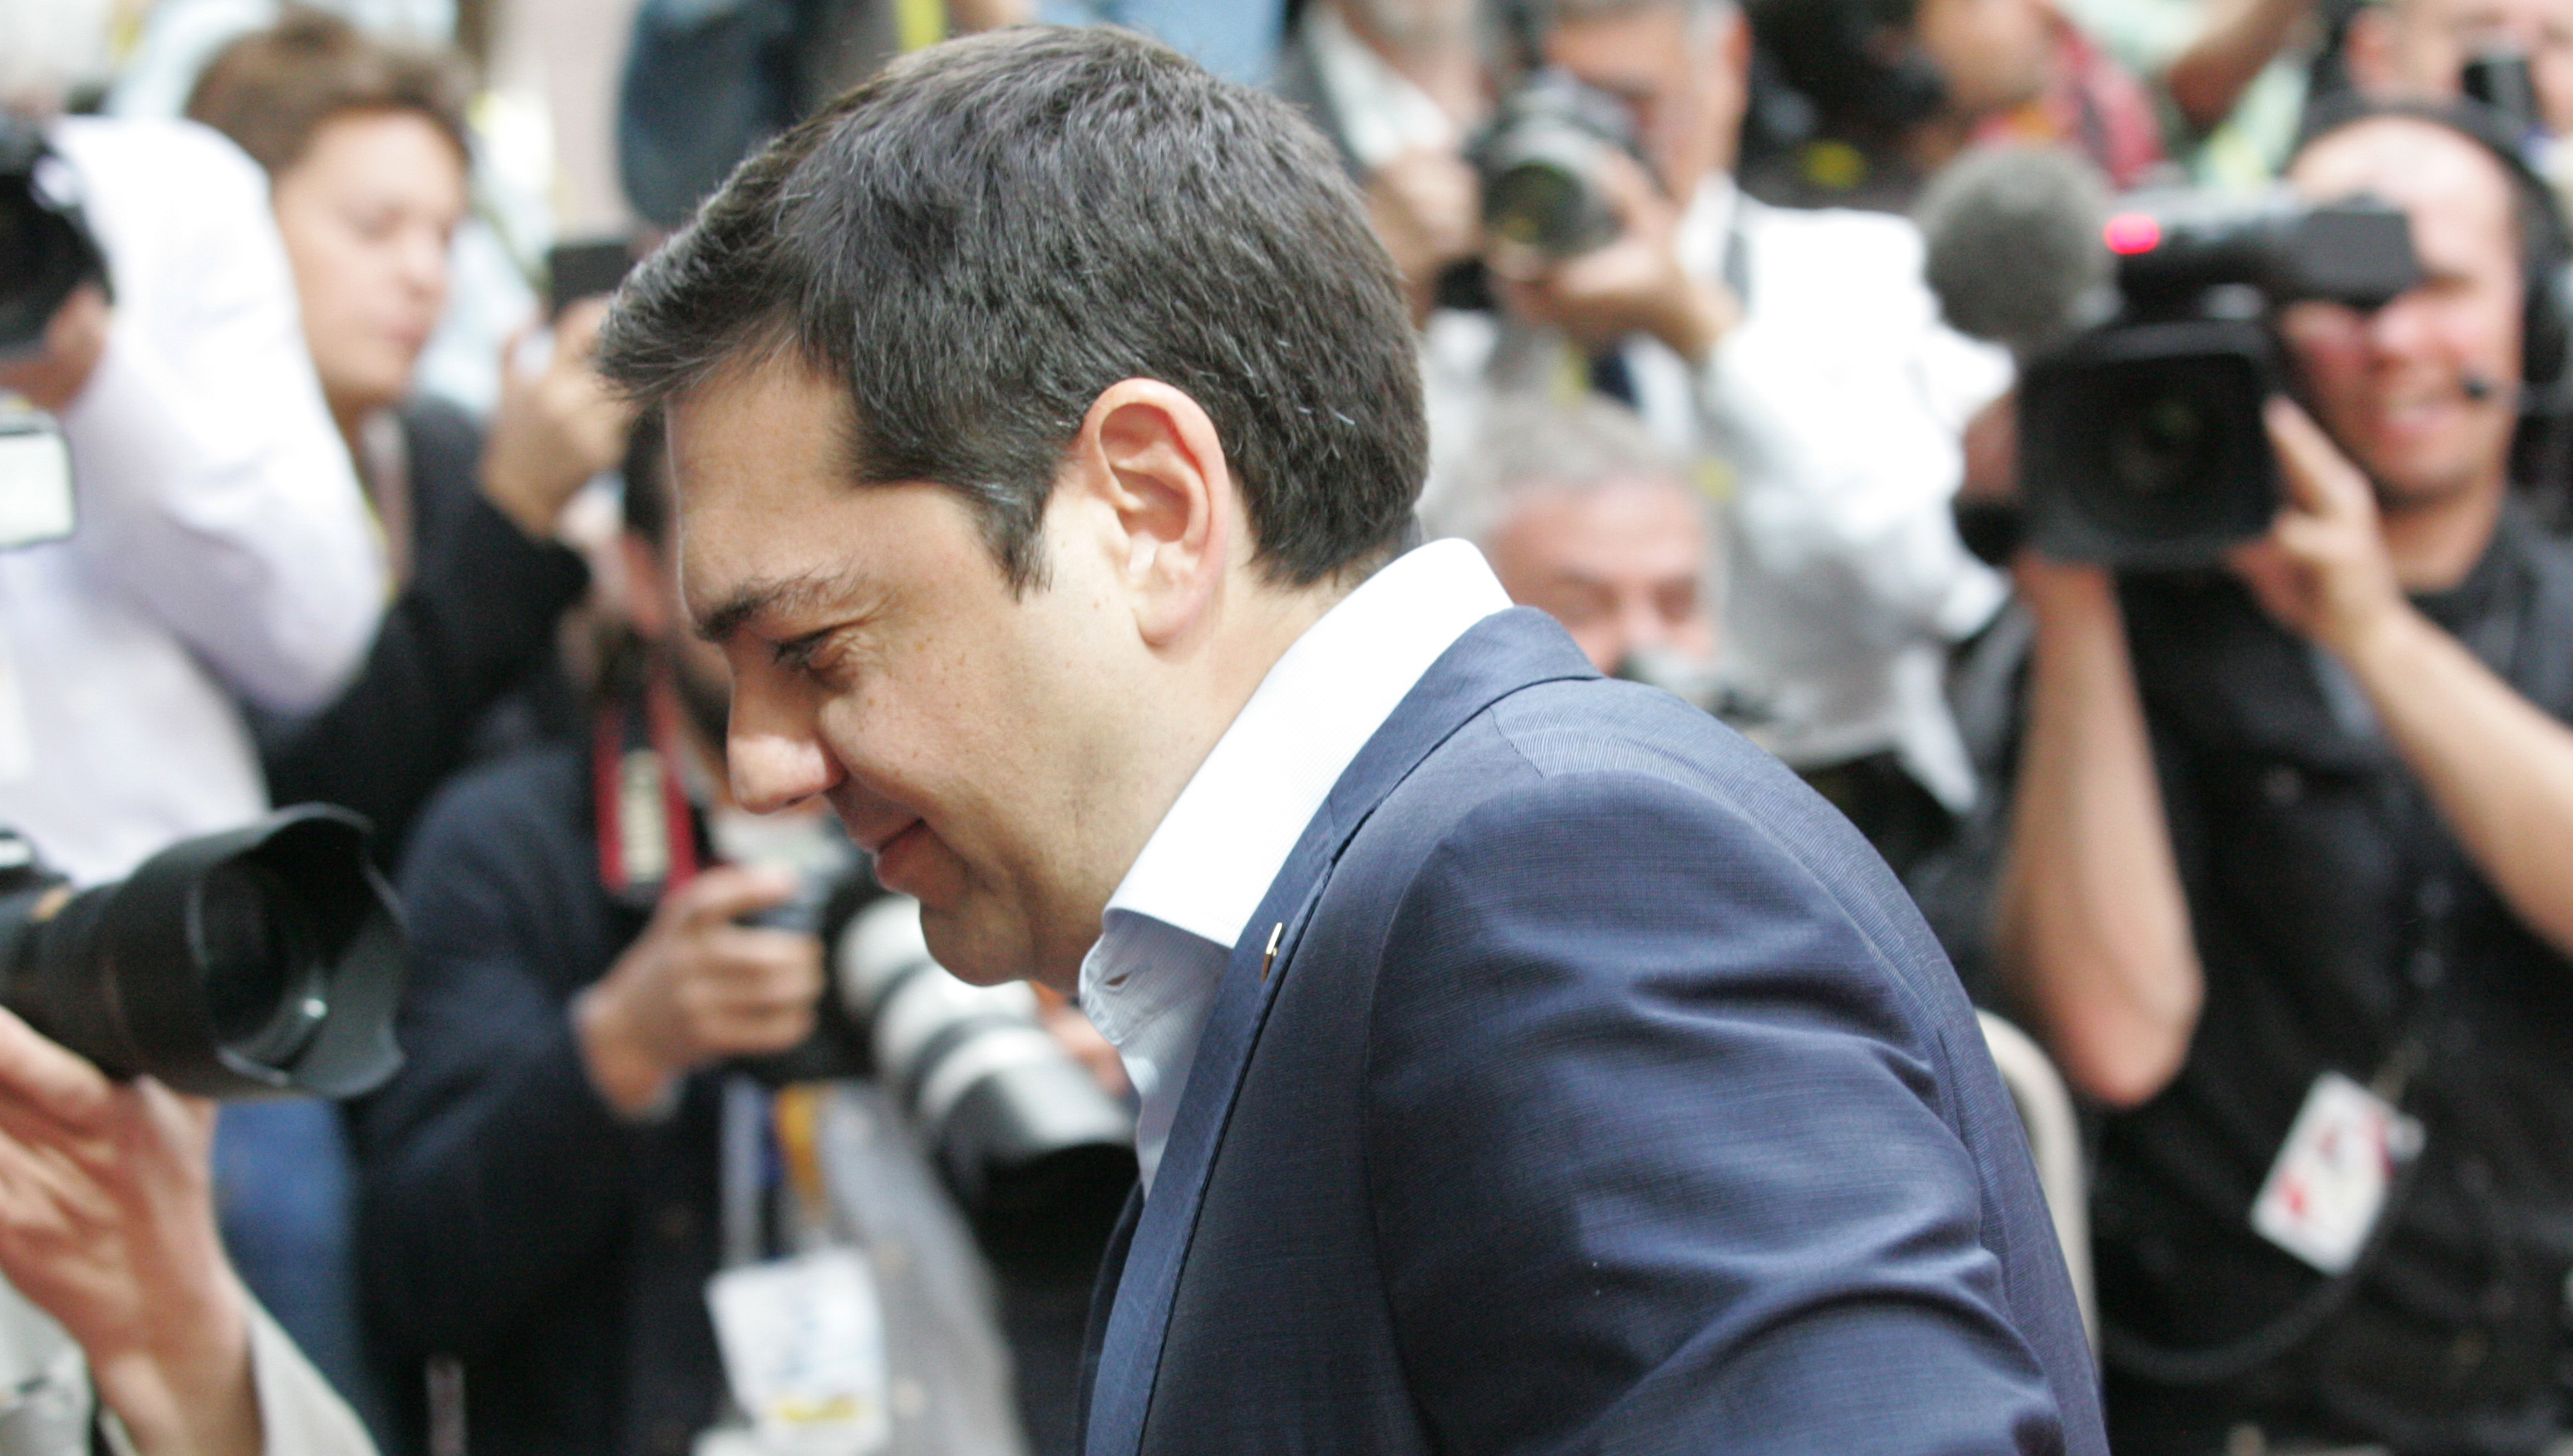 Απορρίπτει η ελληνική κυβέρνηση το σχέδιο των δανειστών για πεντάμηνη χρηματοδότηση (διαρκής ενημέρωση)